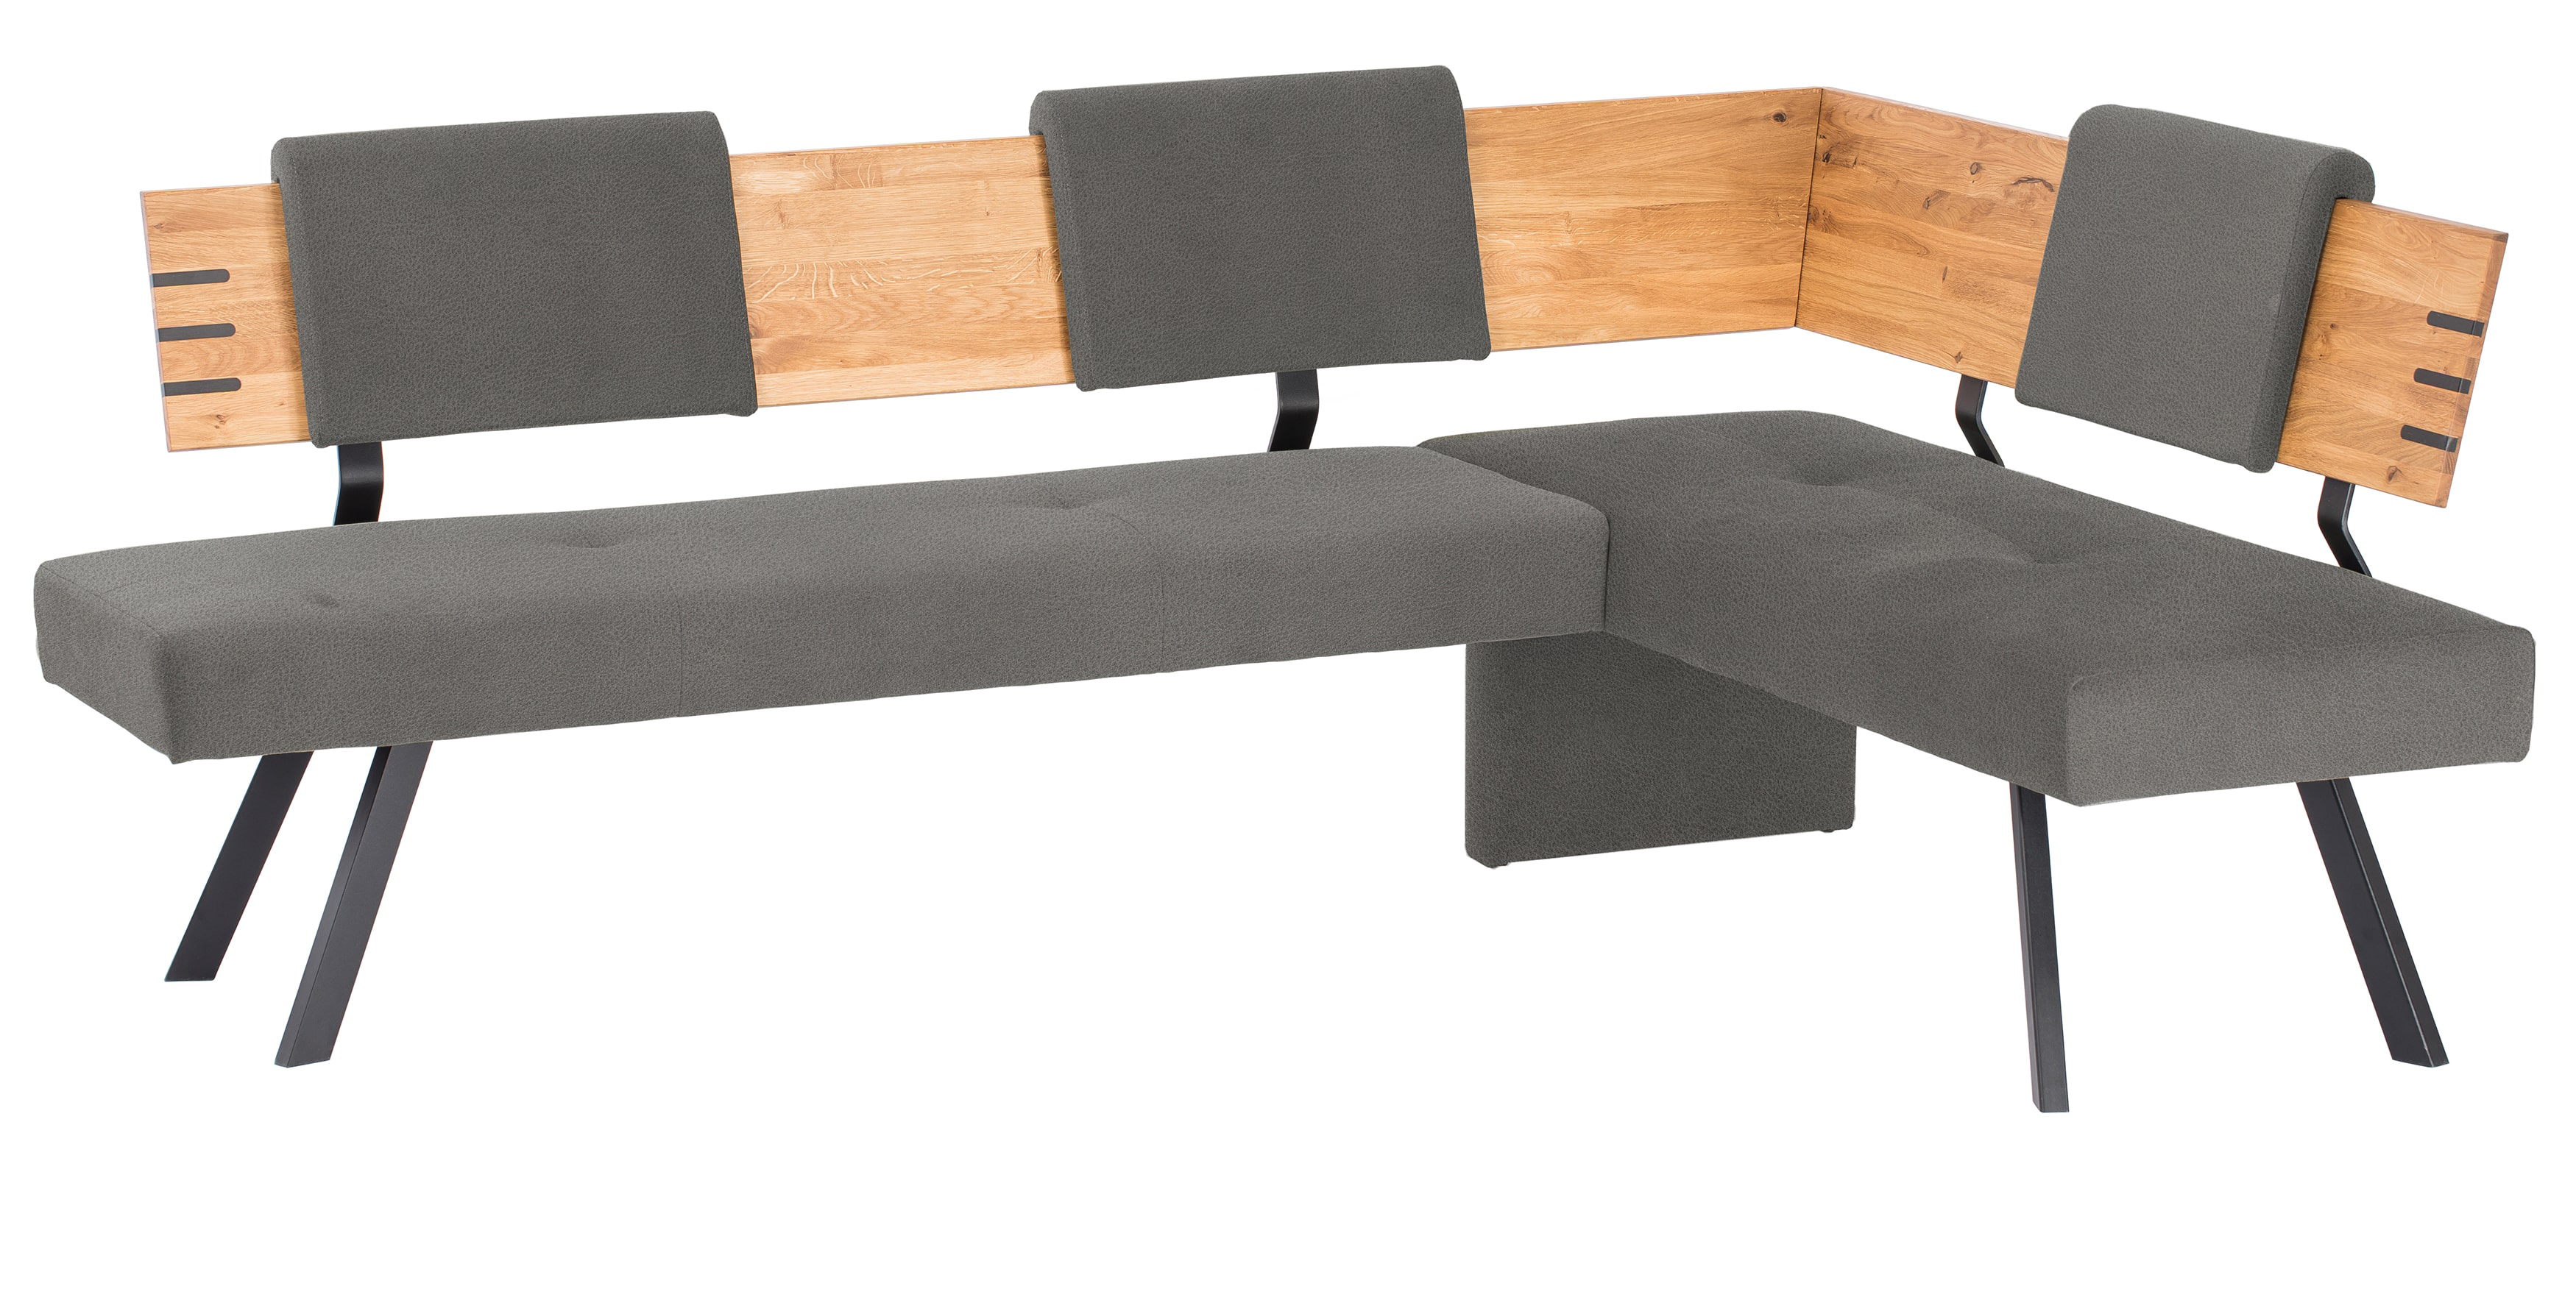 Standard Furniture Colorado Eckbank massiv eiche rustikal mit Bezug Microfaser anthrazit